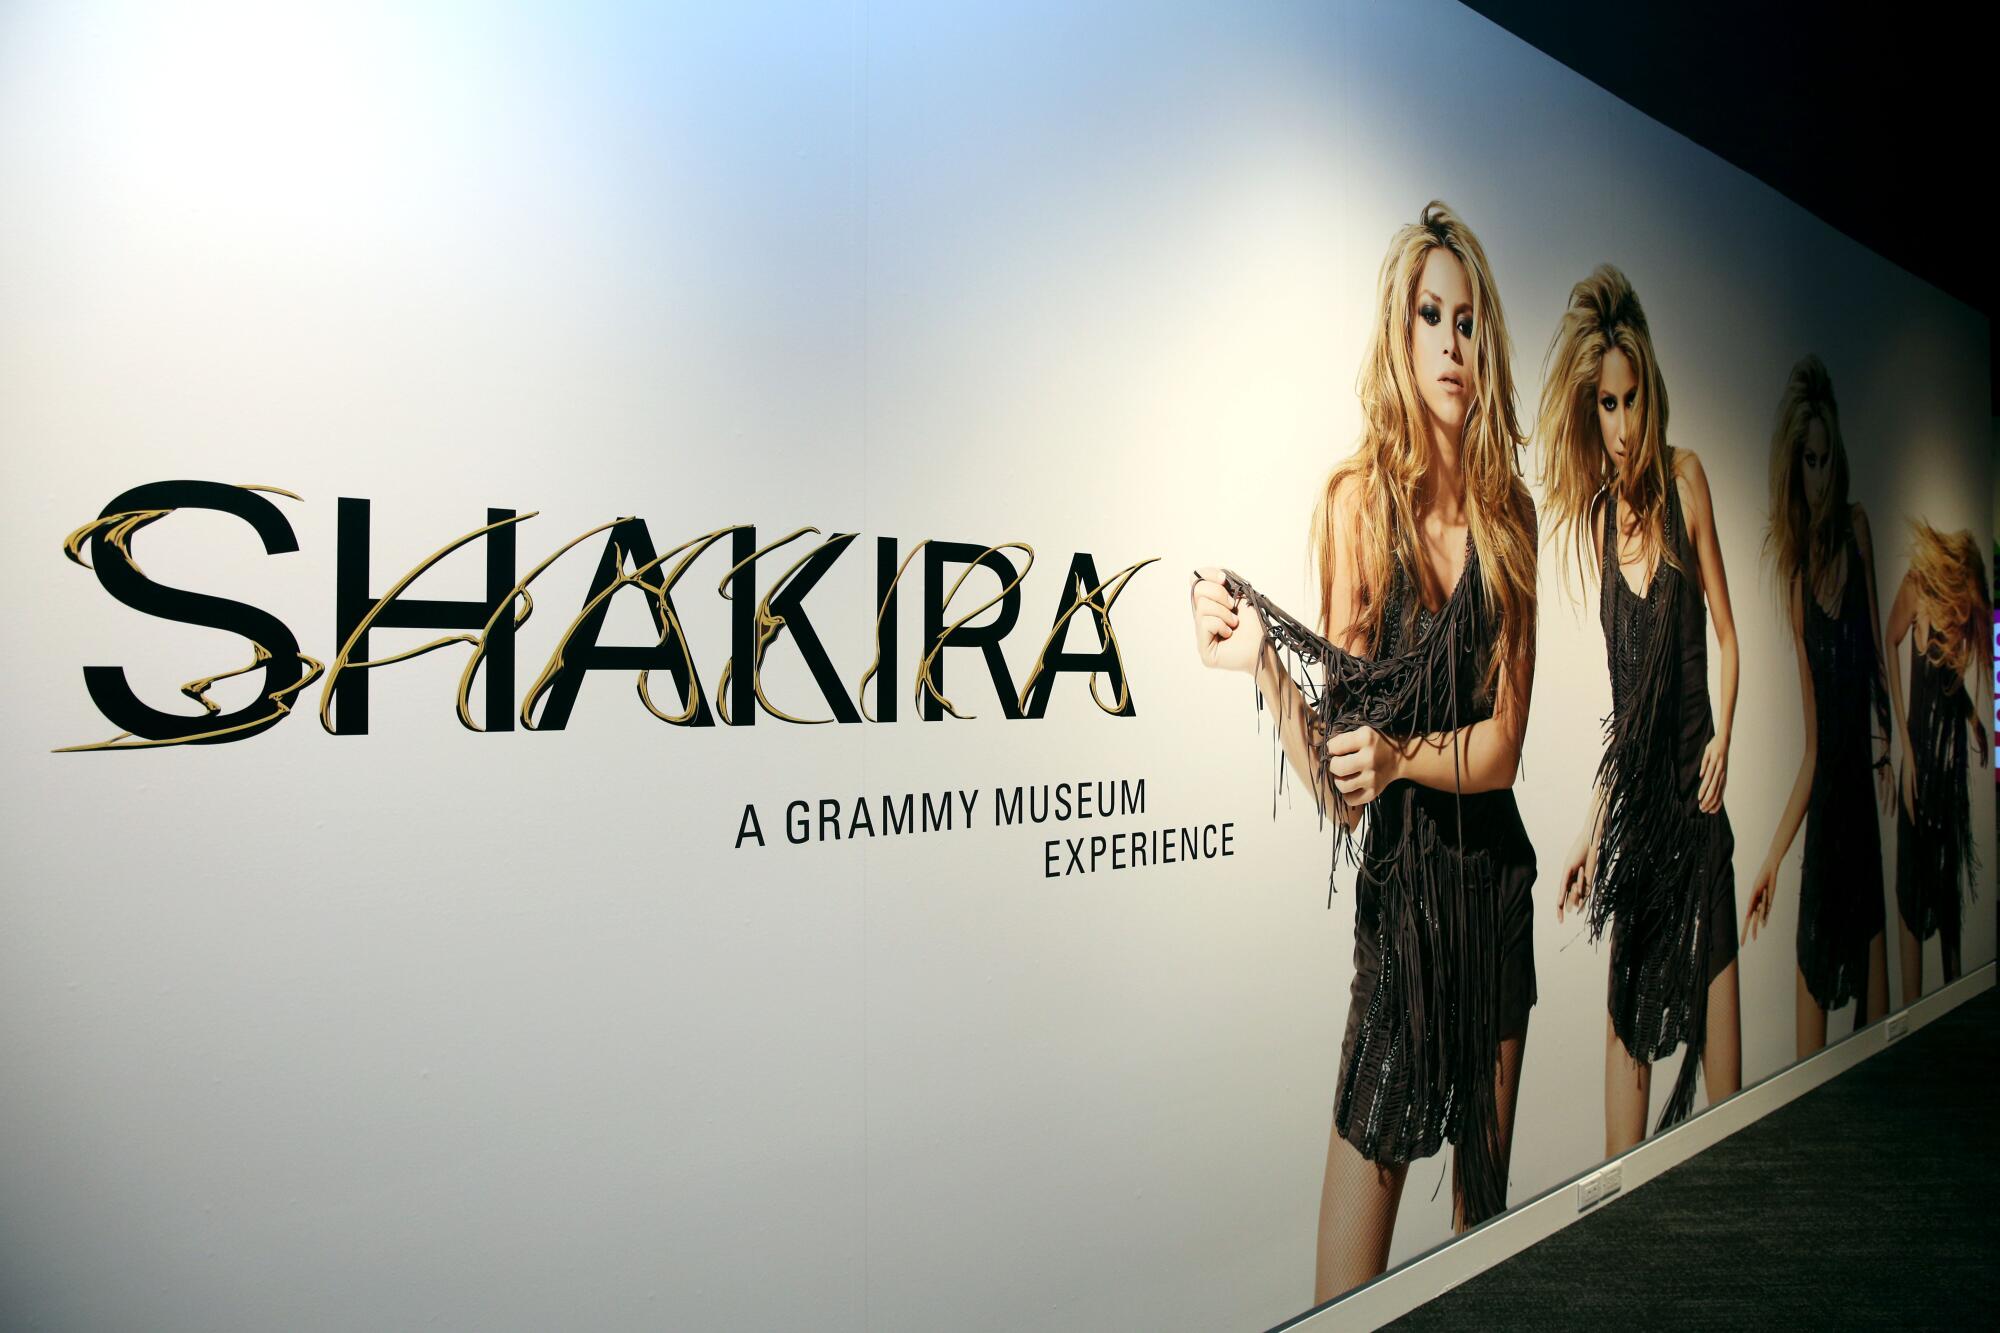 Vista de la entrada a la exhibición "Shakira: The GRAMMY Museum Experience" en el GRAMMY Museum de Los Ángeles.